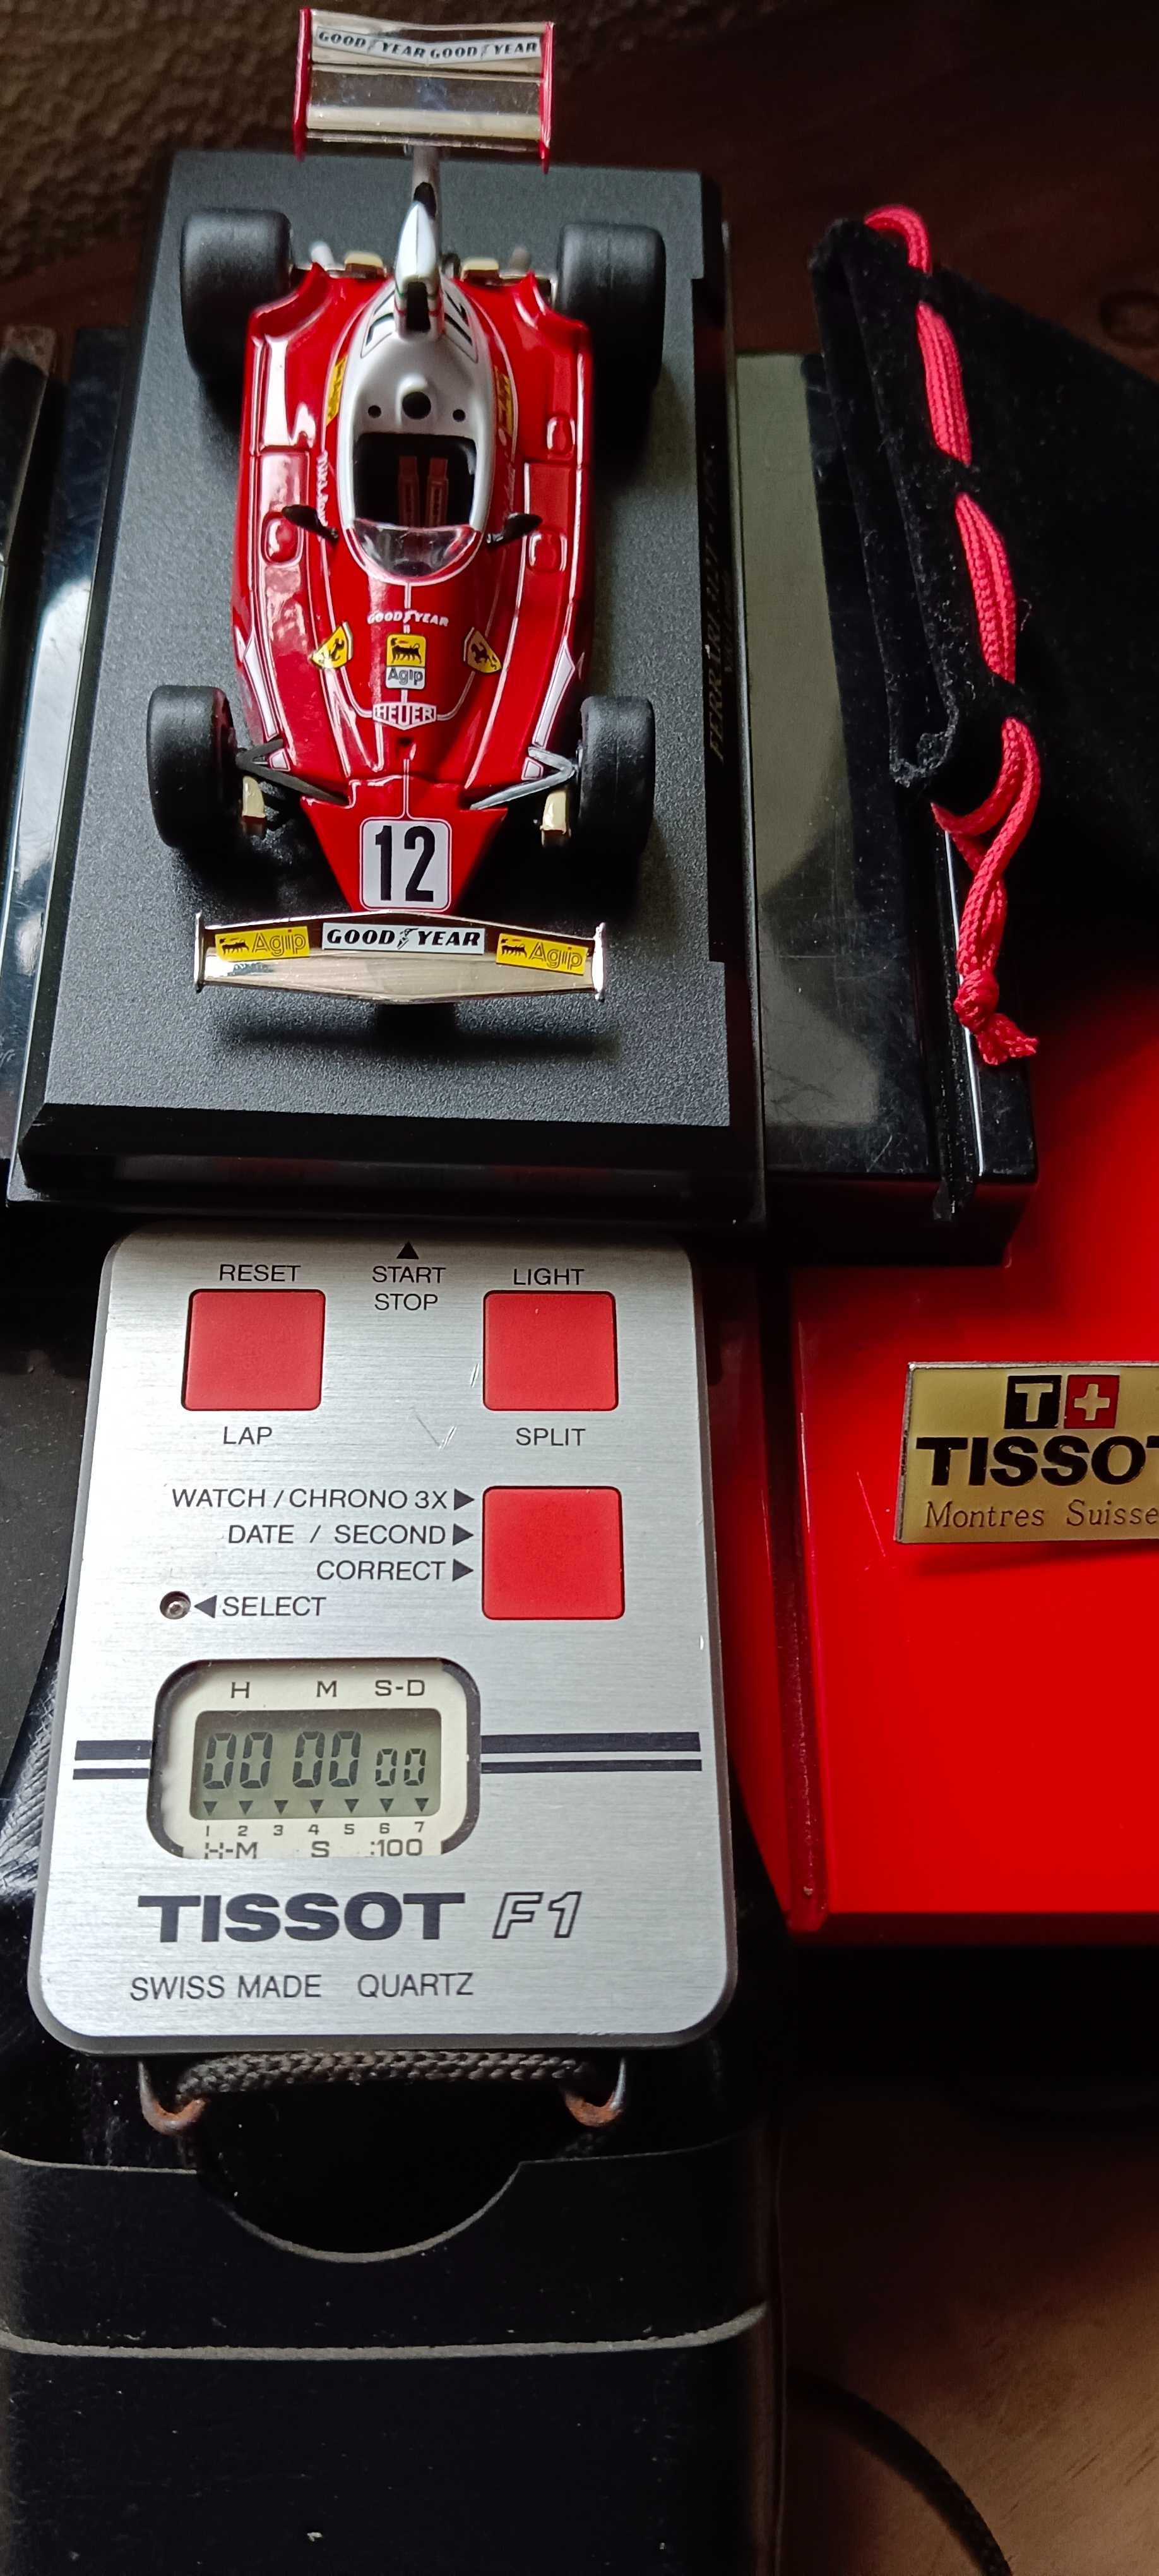 Único em Portugal Cronómetro Tissot F1